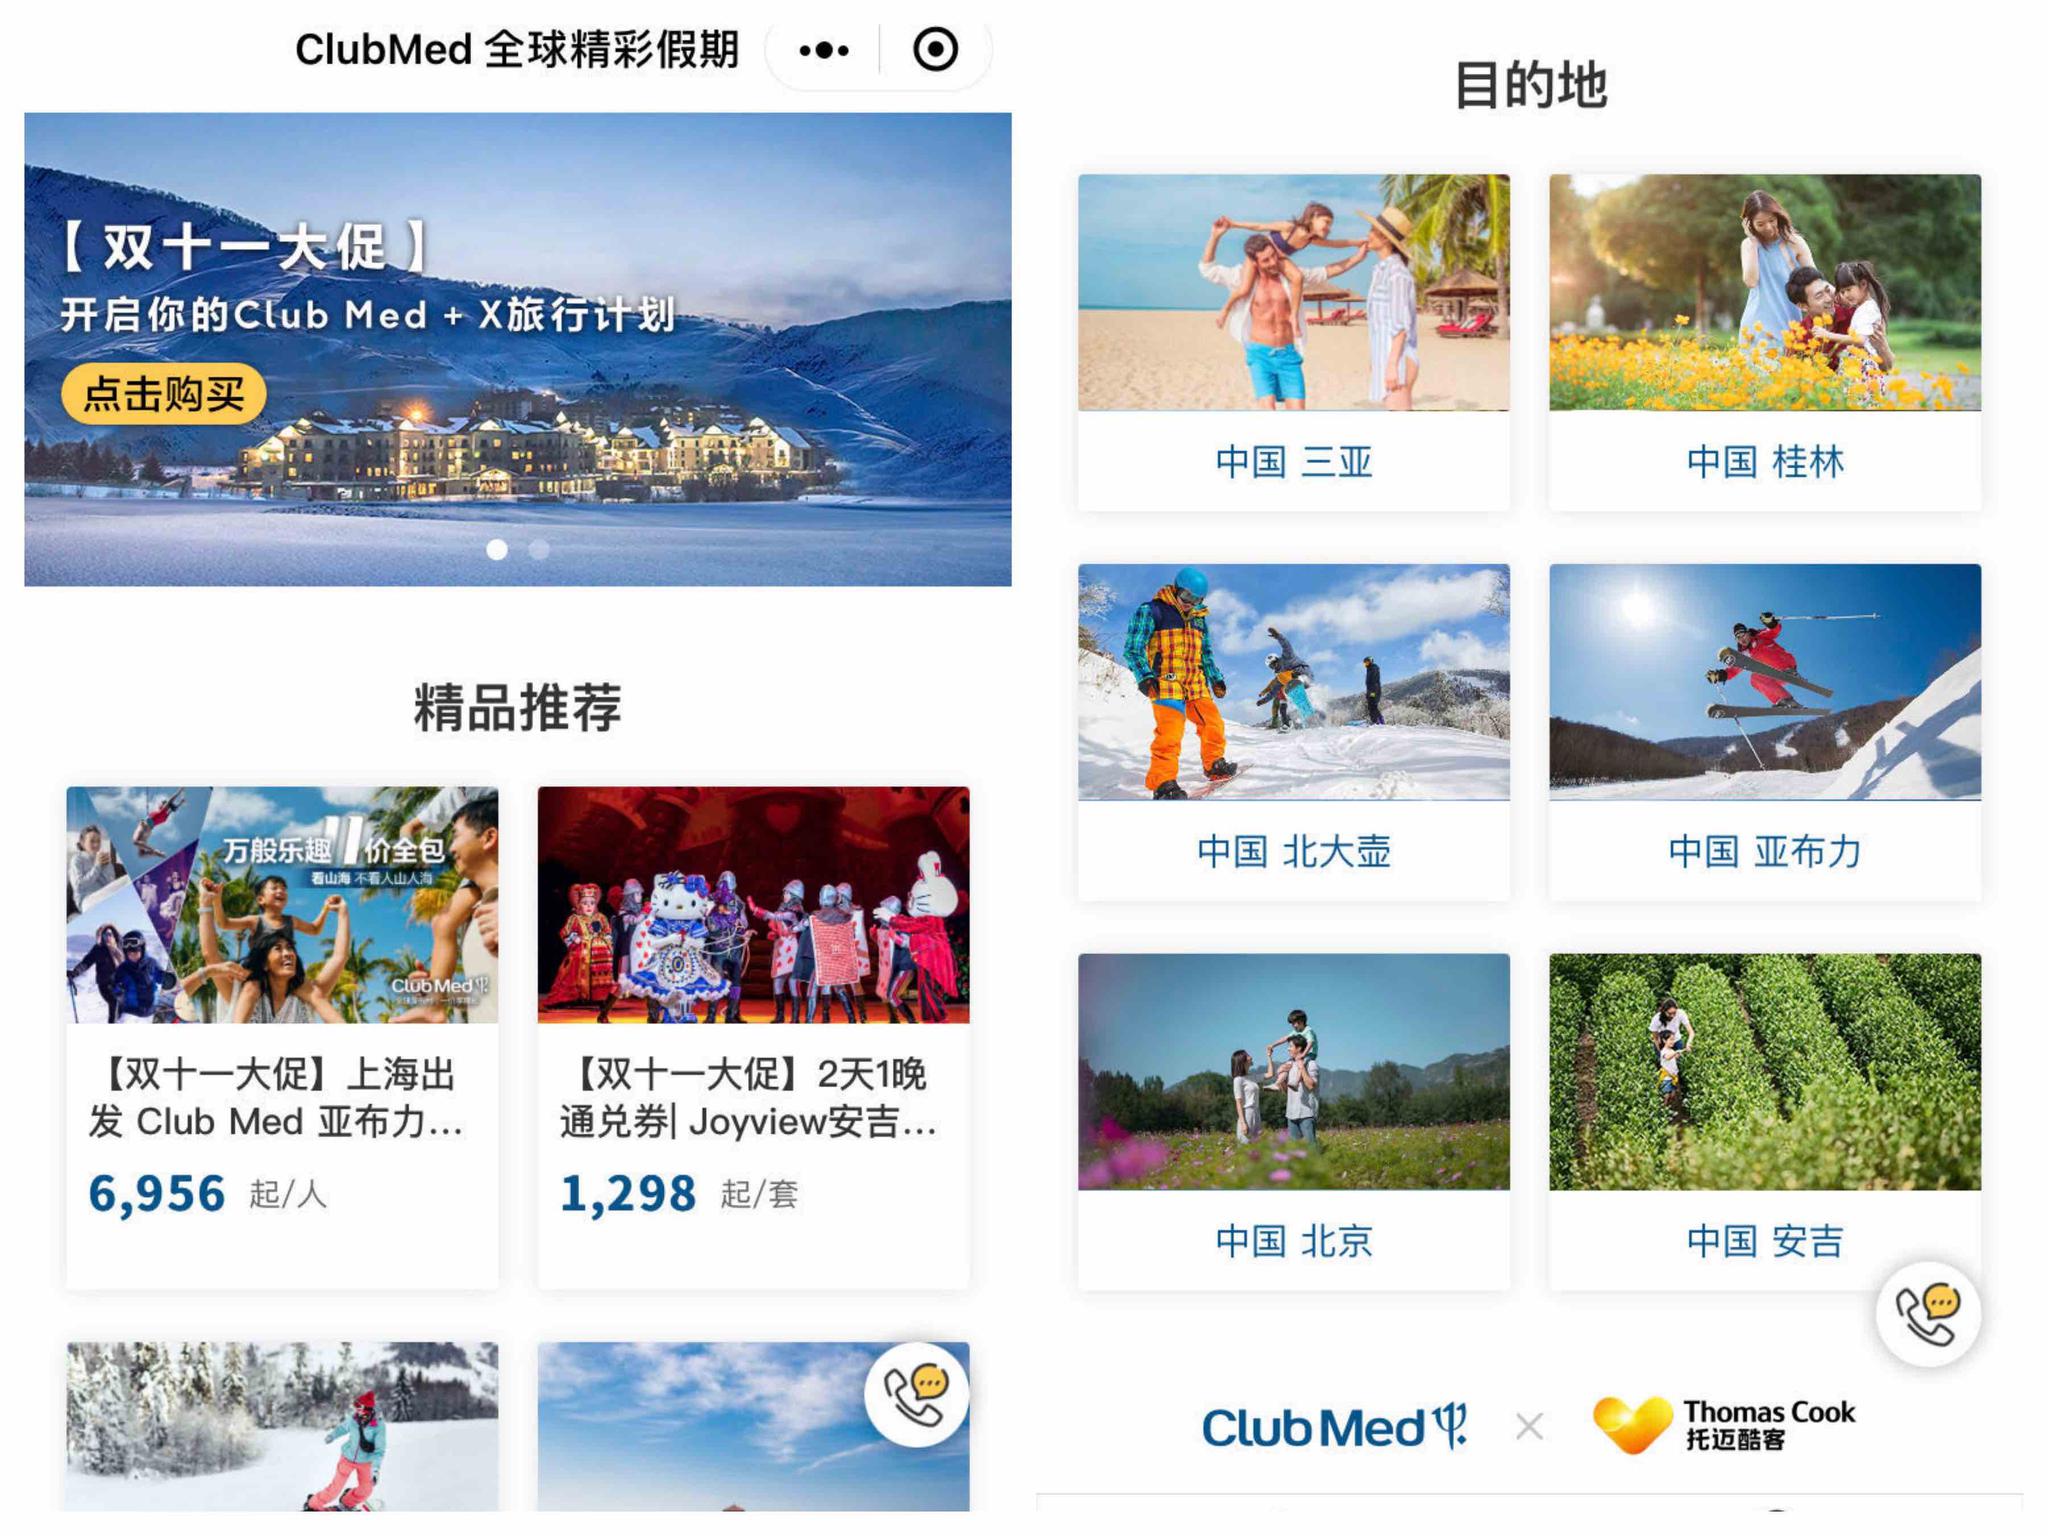 Club Med 全球精彩假期小程序截图 